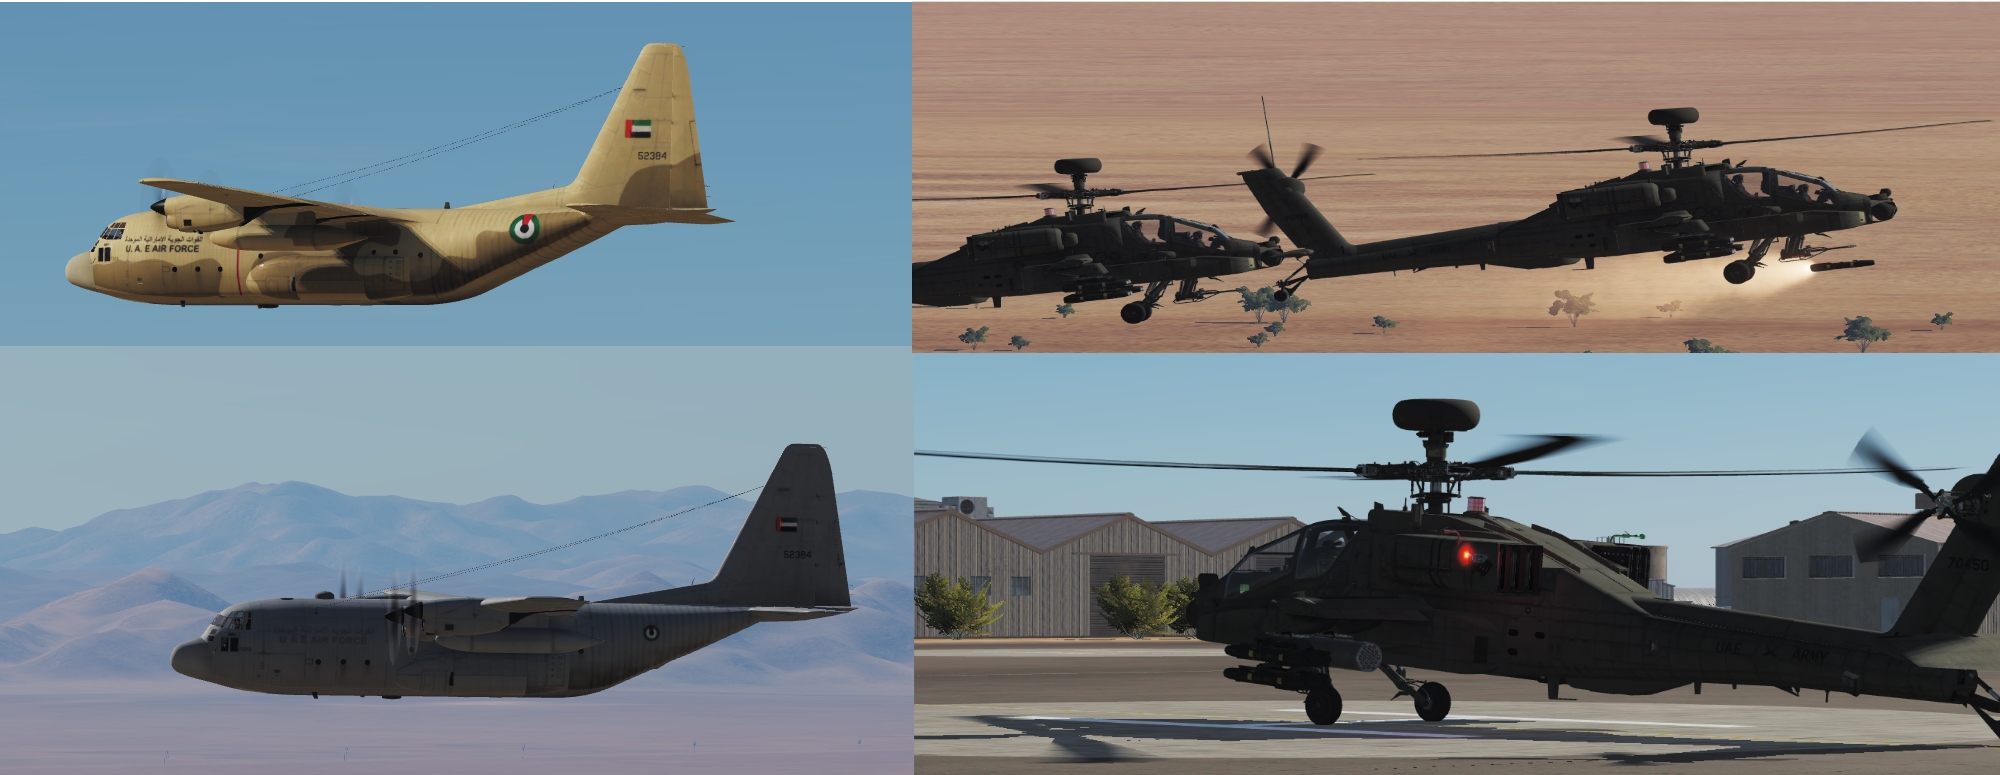 UAE C-130 Two Pack + UAE Army AH-64D